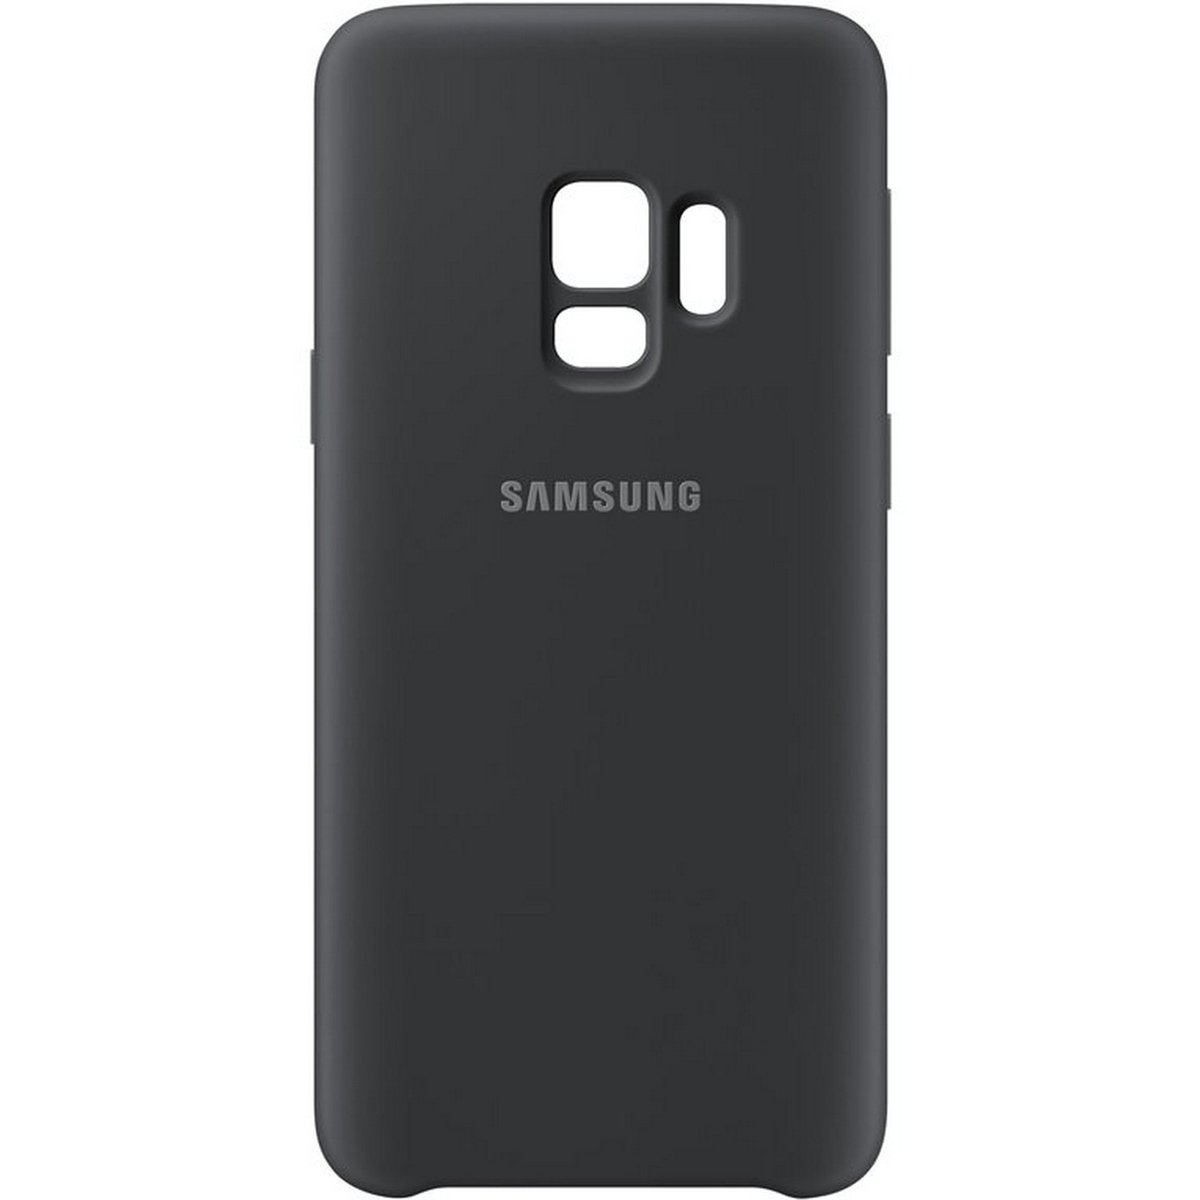 Samsung Galaxy S9 Silicone Cover Black EF-PG960TBEGWW